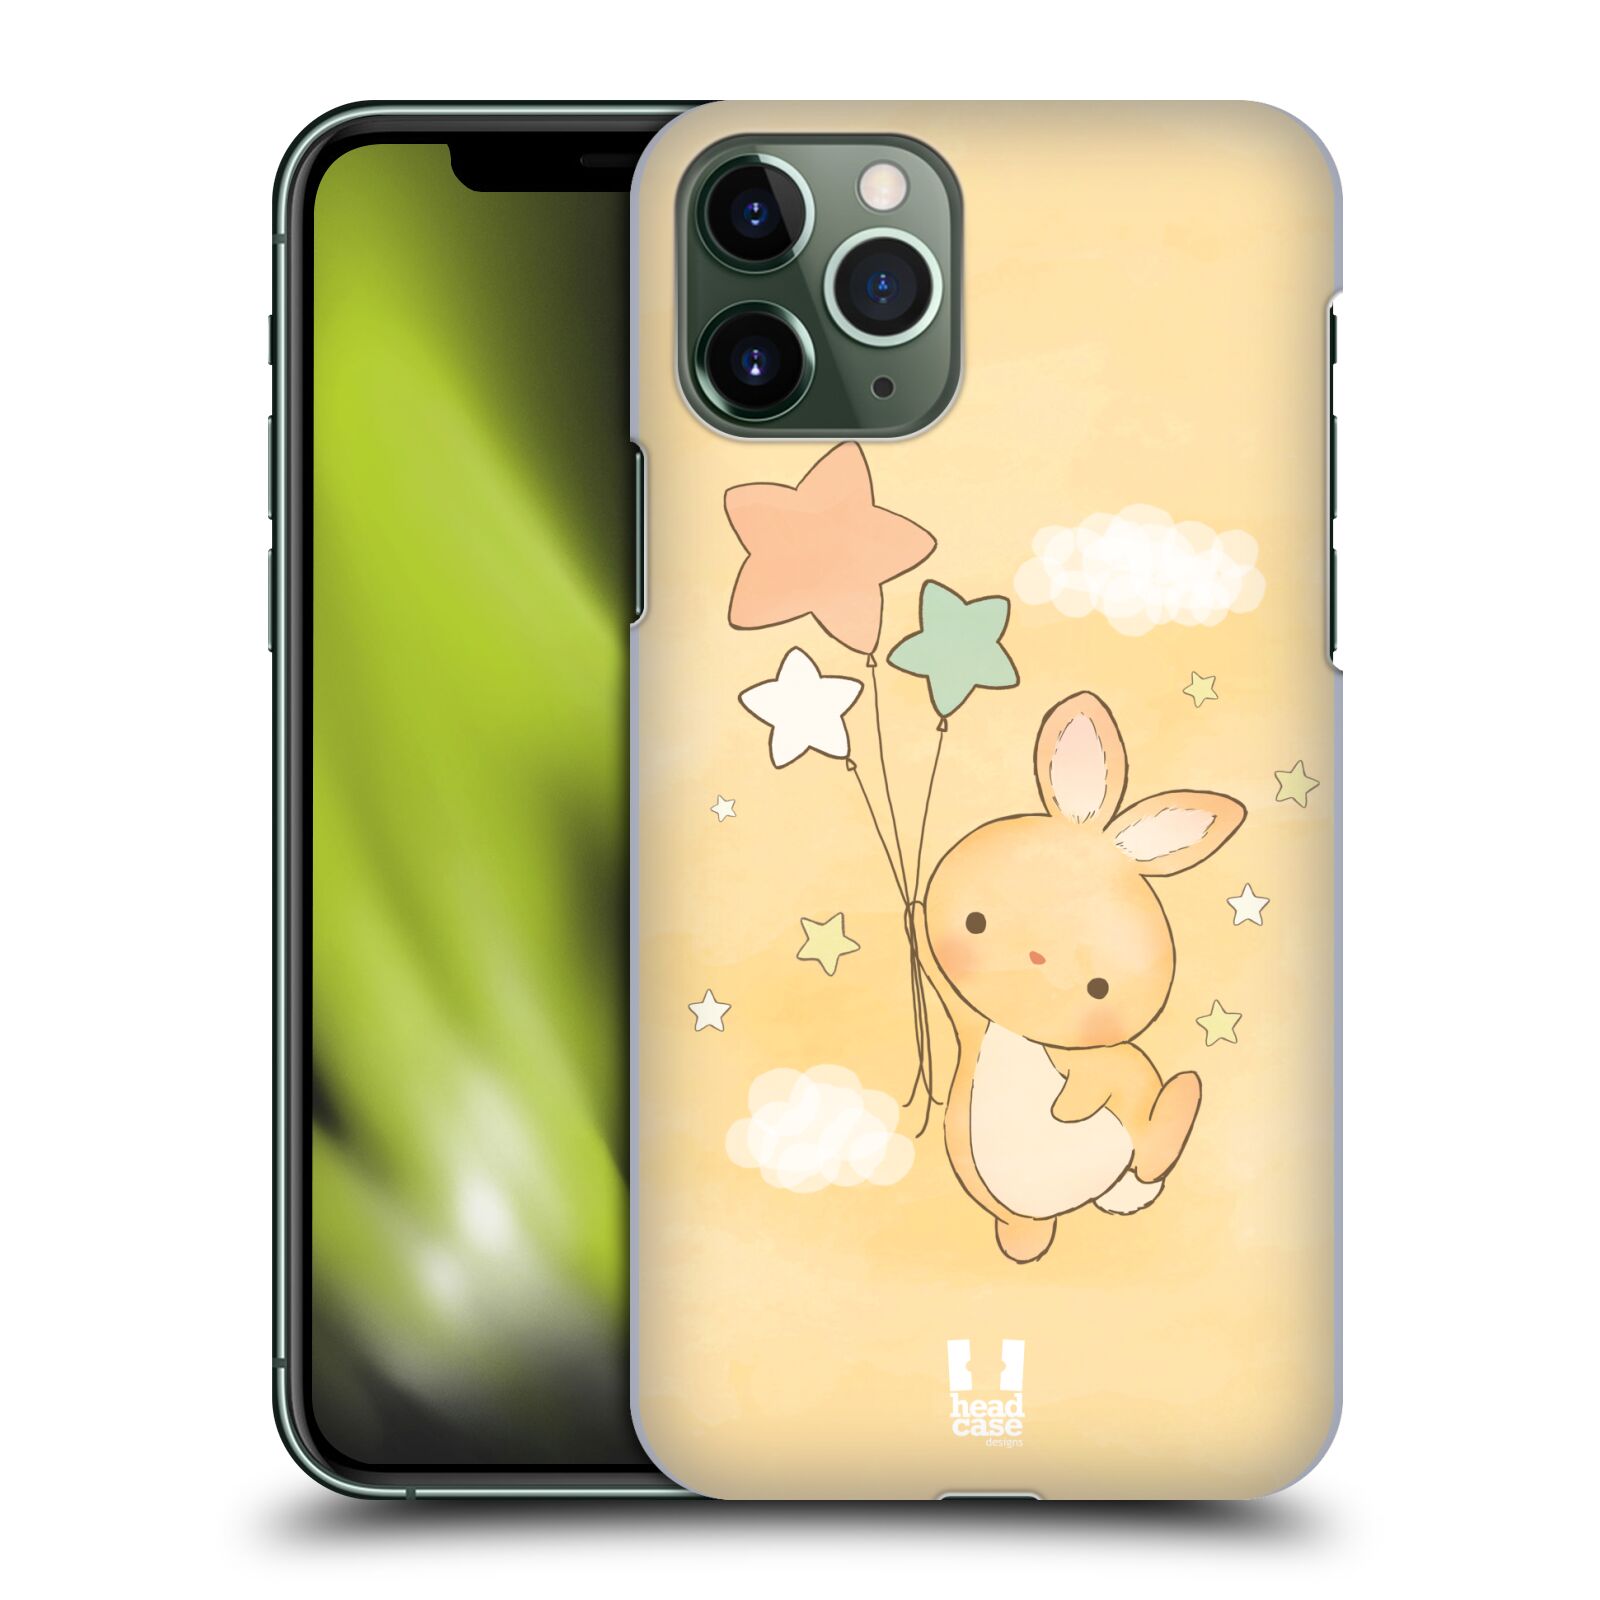 Pouzdro na mobil Apple Iphone 11 PRO - HEAD CASE - vzor králíček a hvězdy žlutá